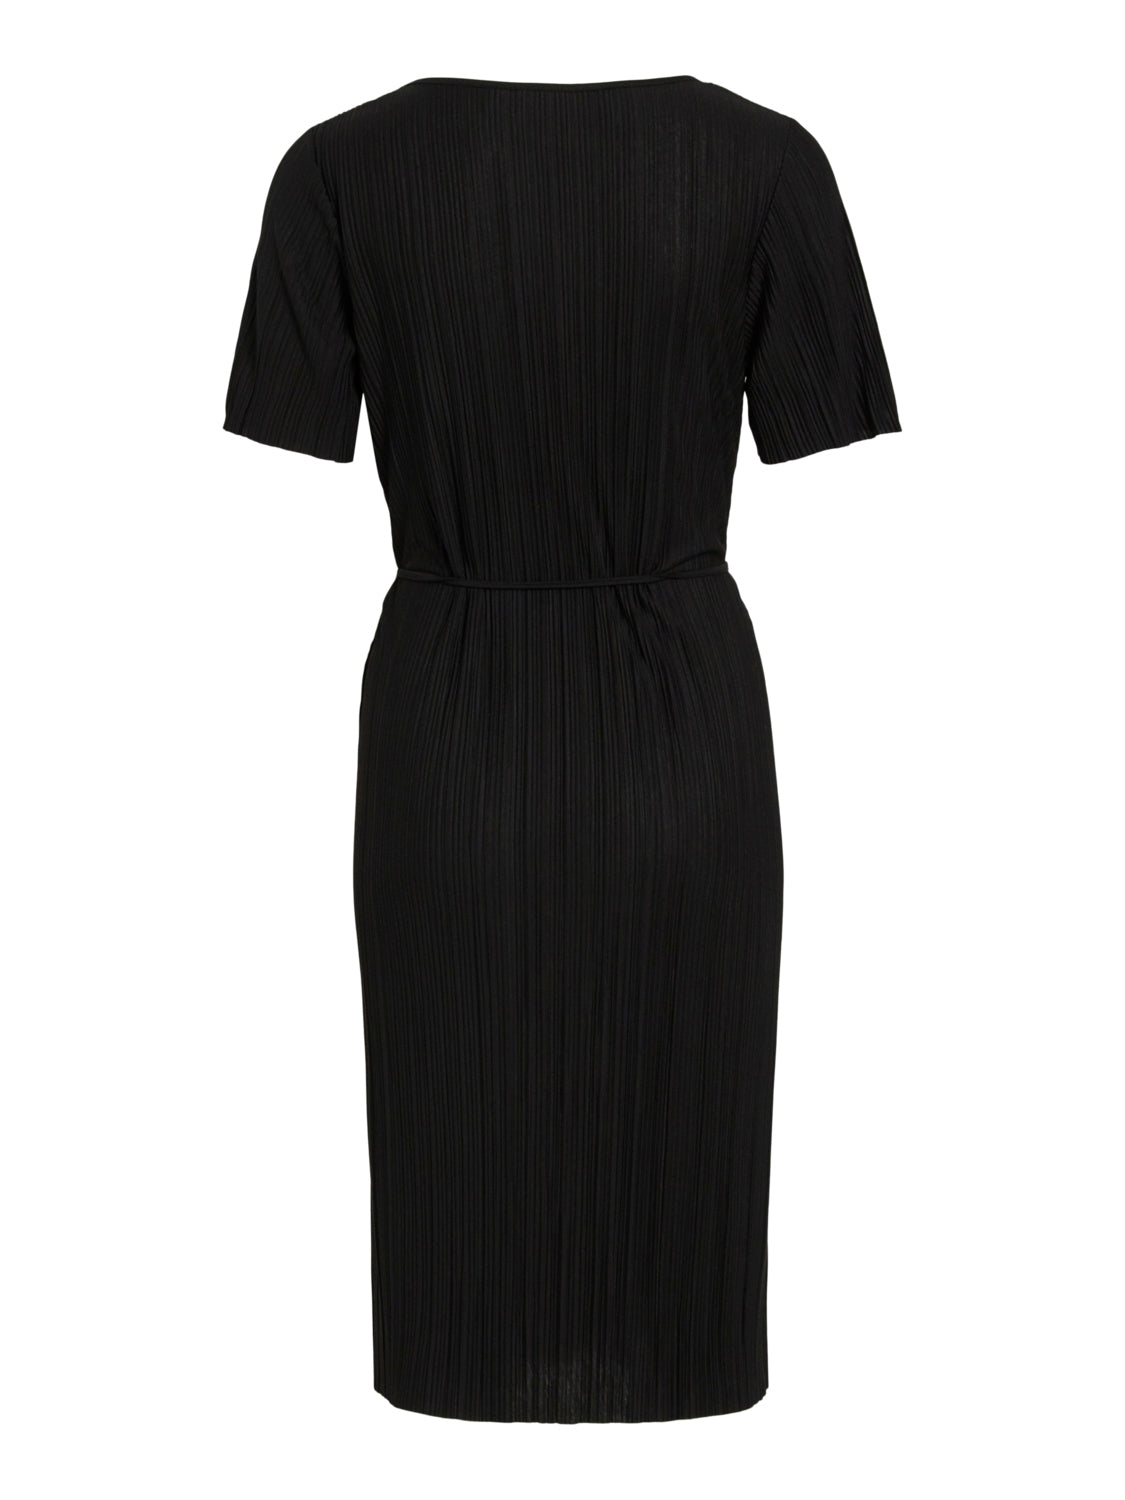 VIPLISA Dress - Black